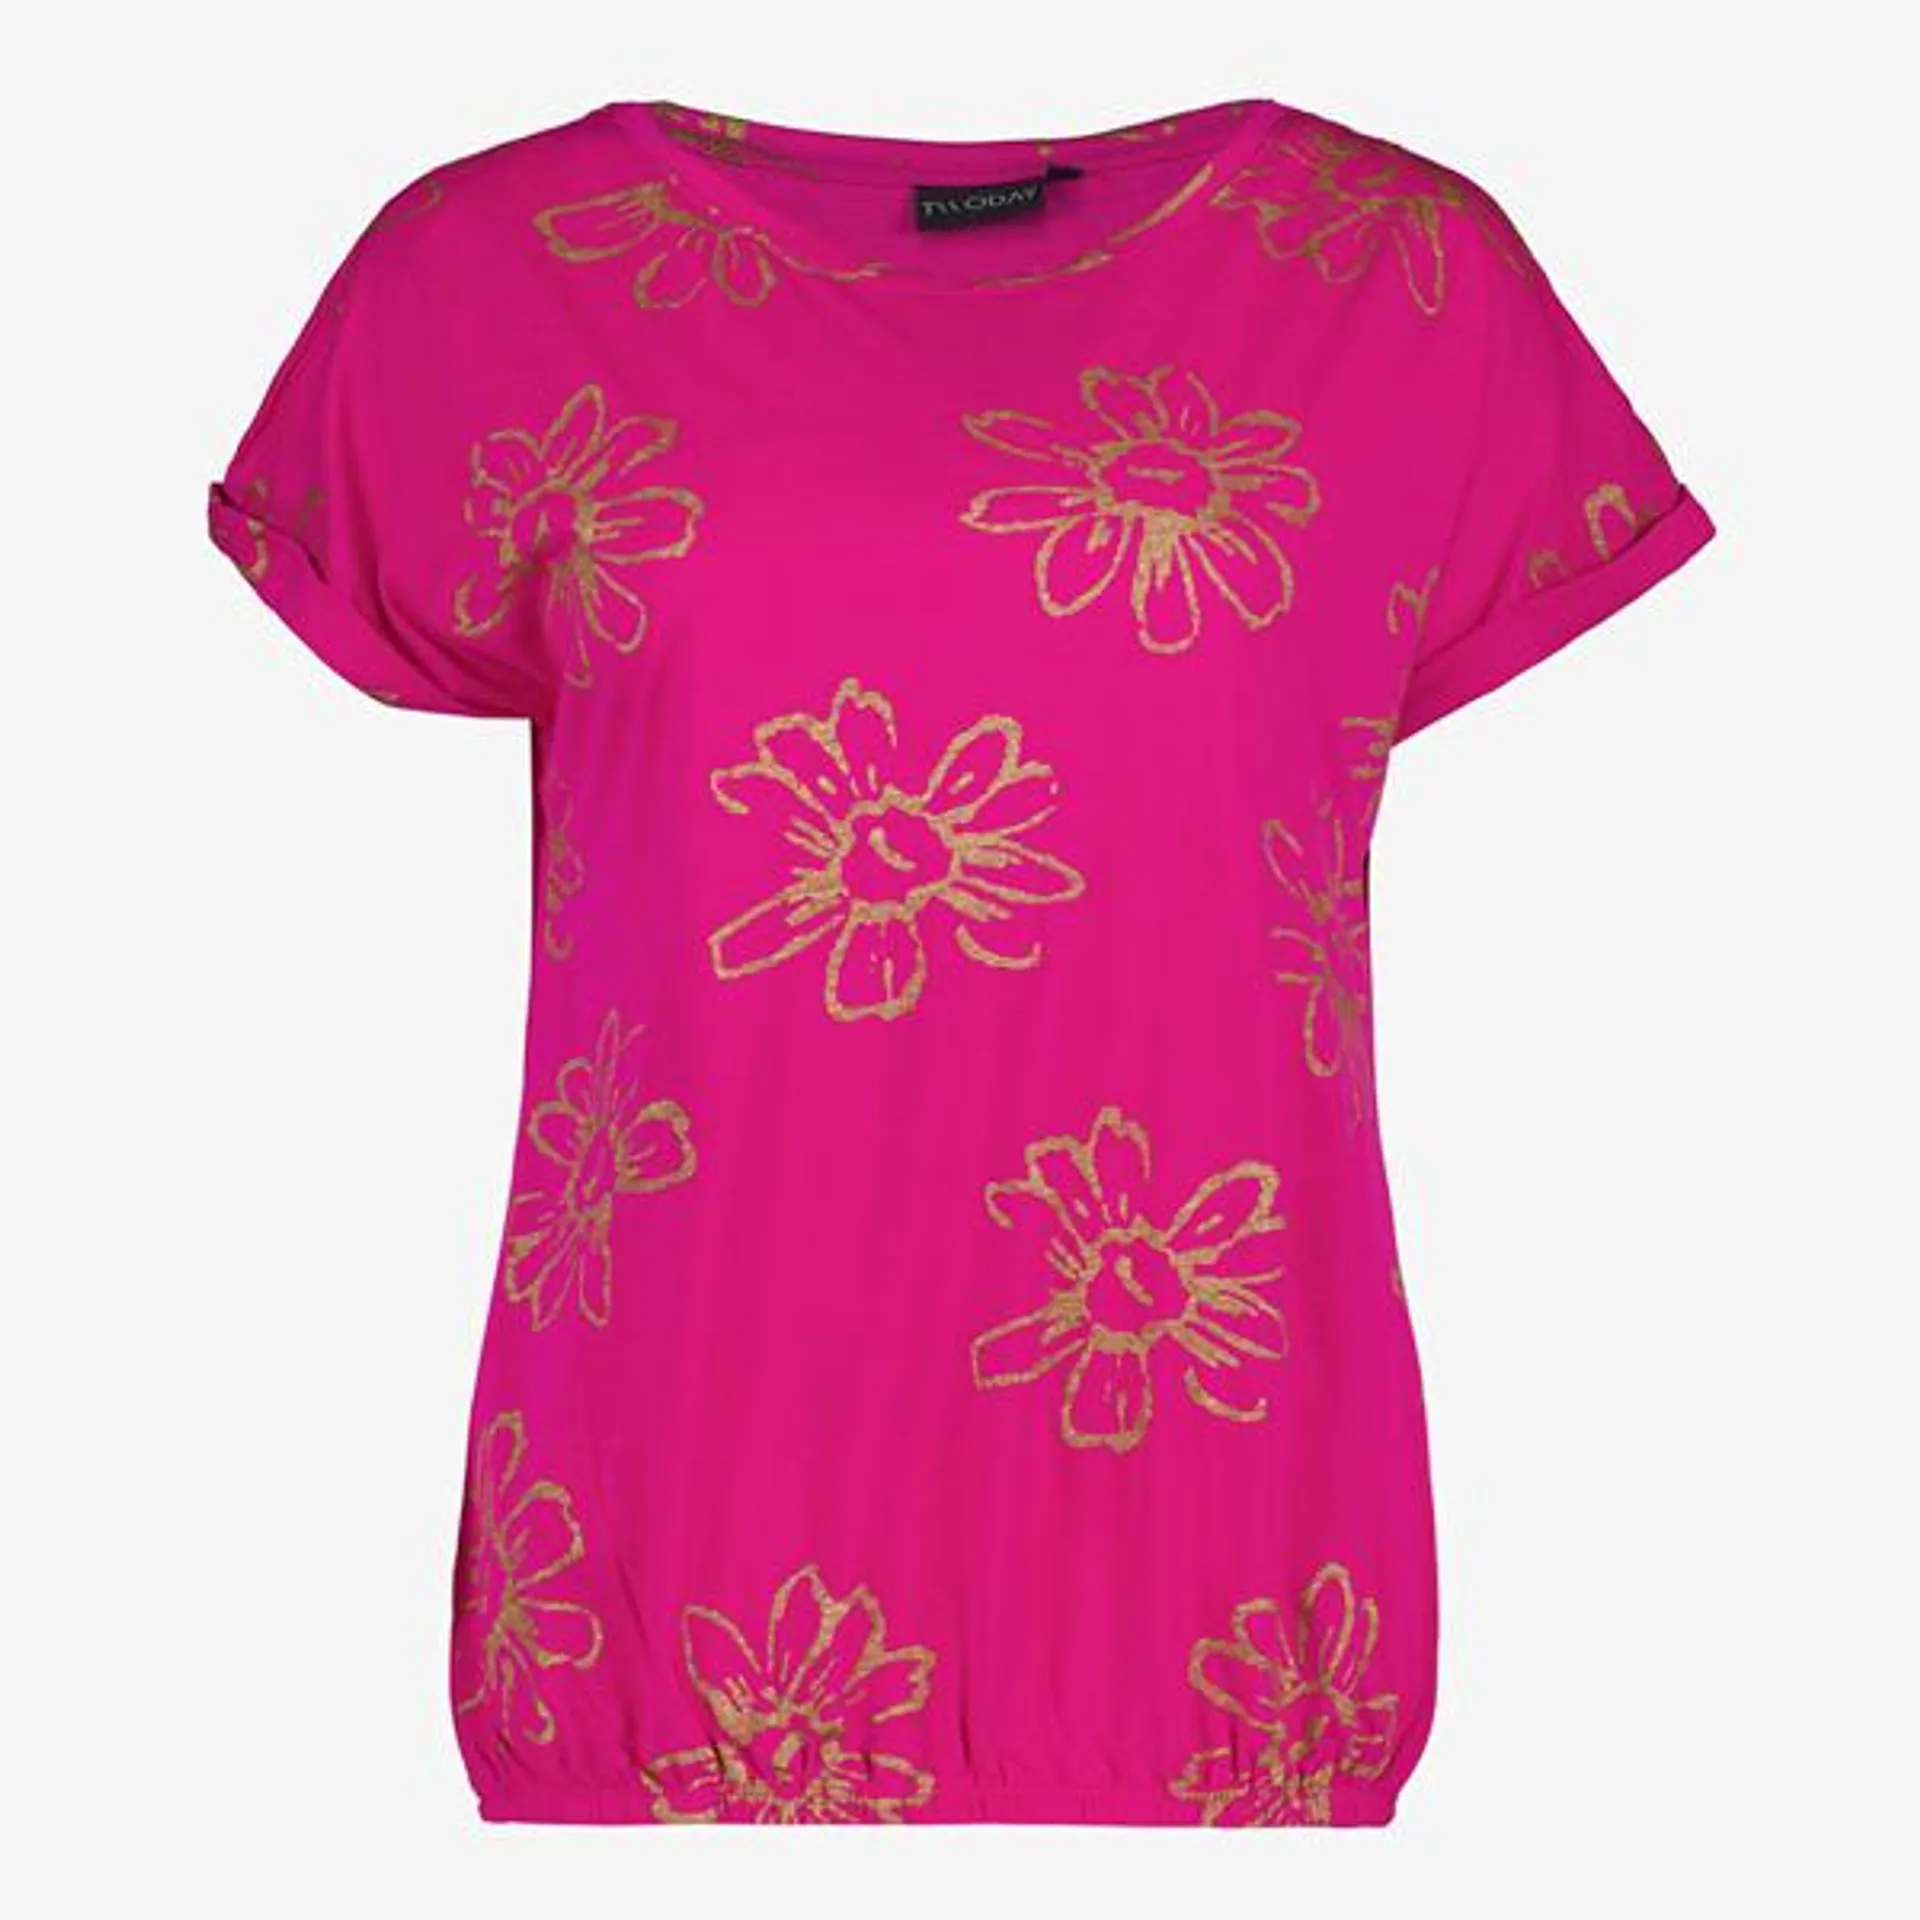 Roze dames T-shirt uit de TwoDay collectie. Voorzien van een ronde hals en ...